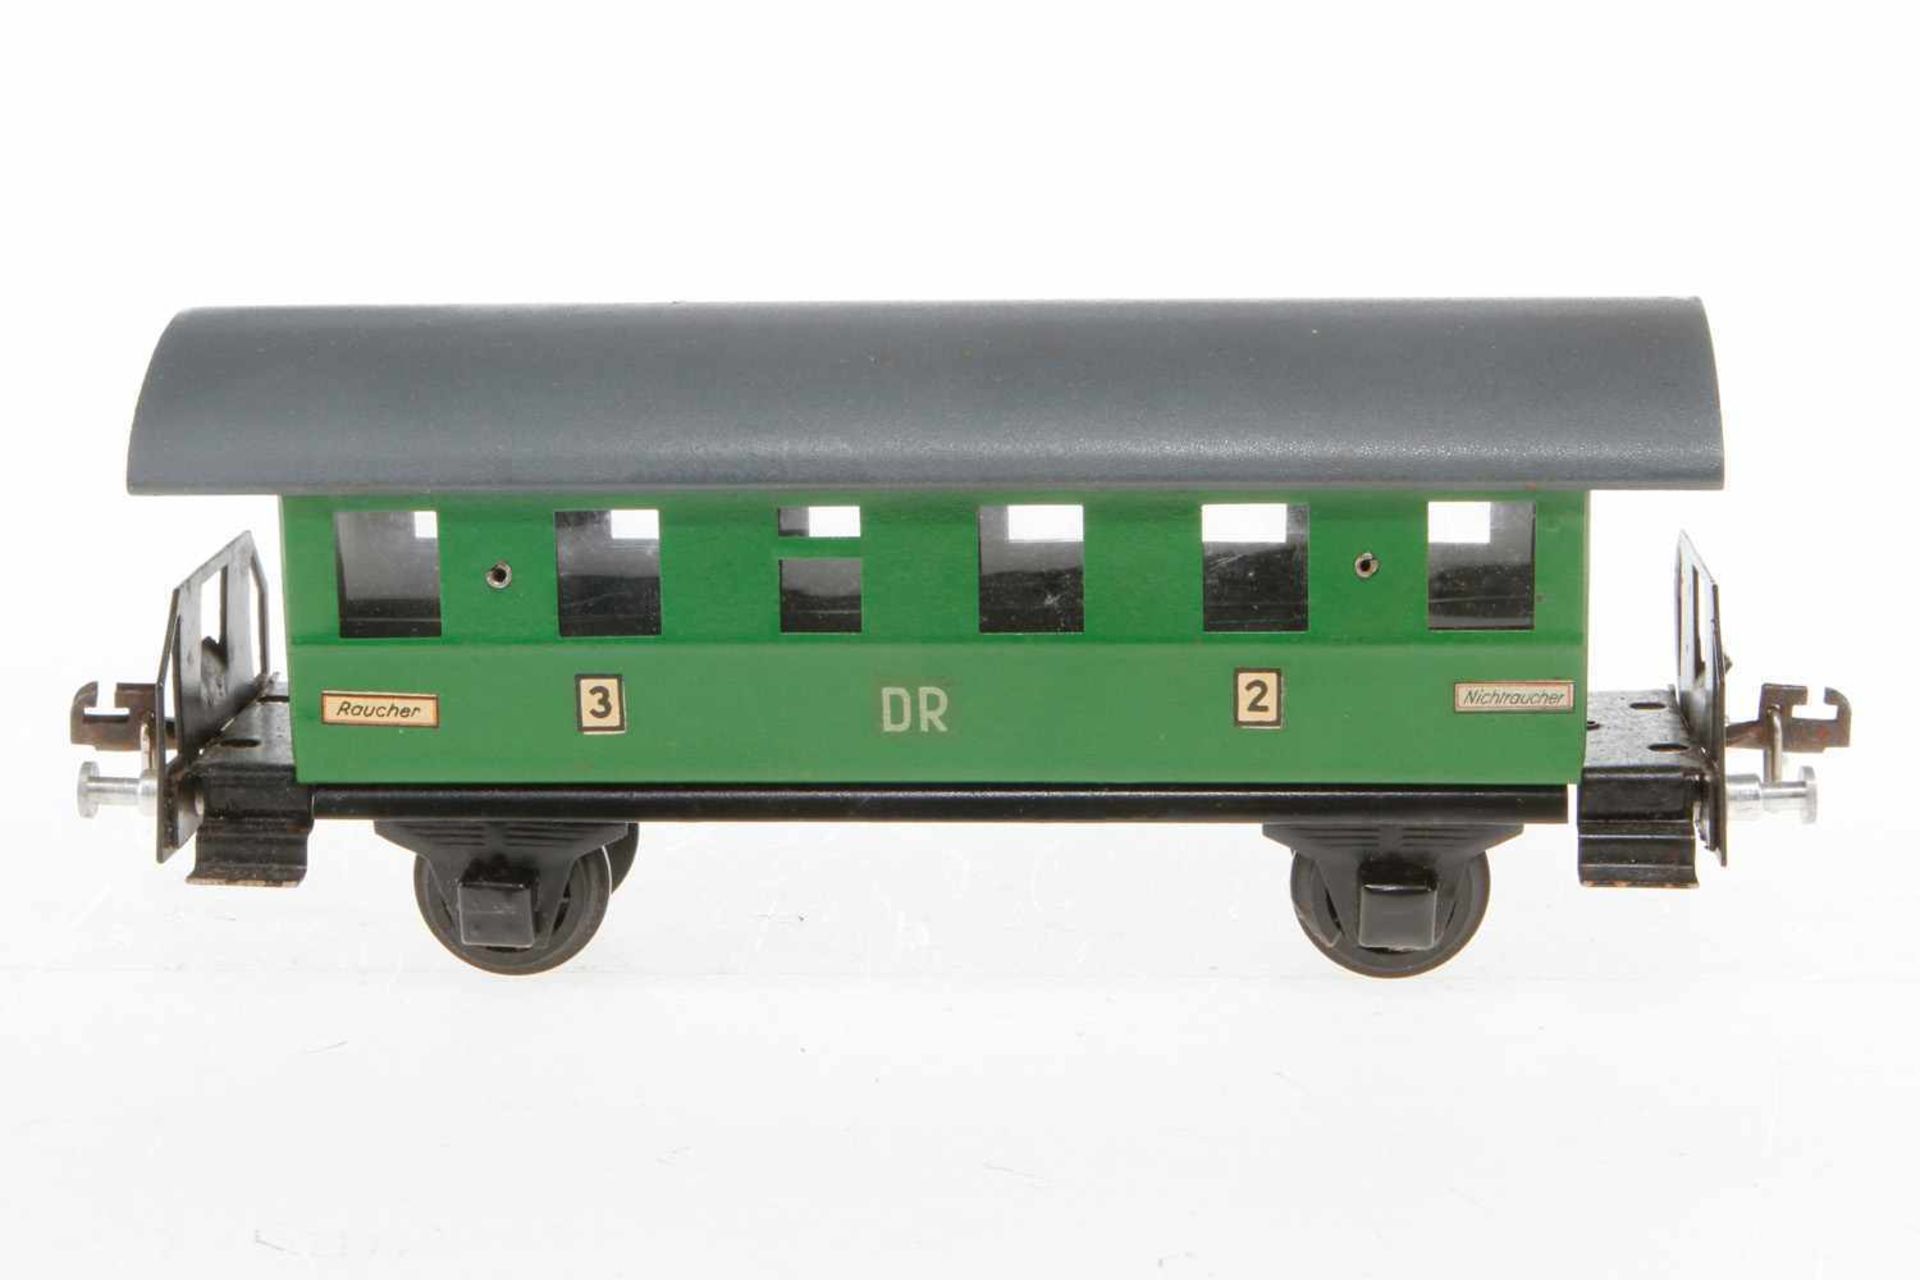 Liebmann/Stadtilm Personenwagen 108/47, S 0, grün, LS und Alterungsspuren, L 24, Z 2